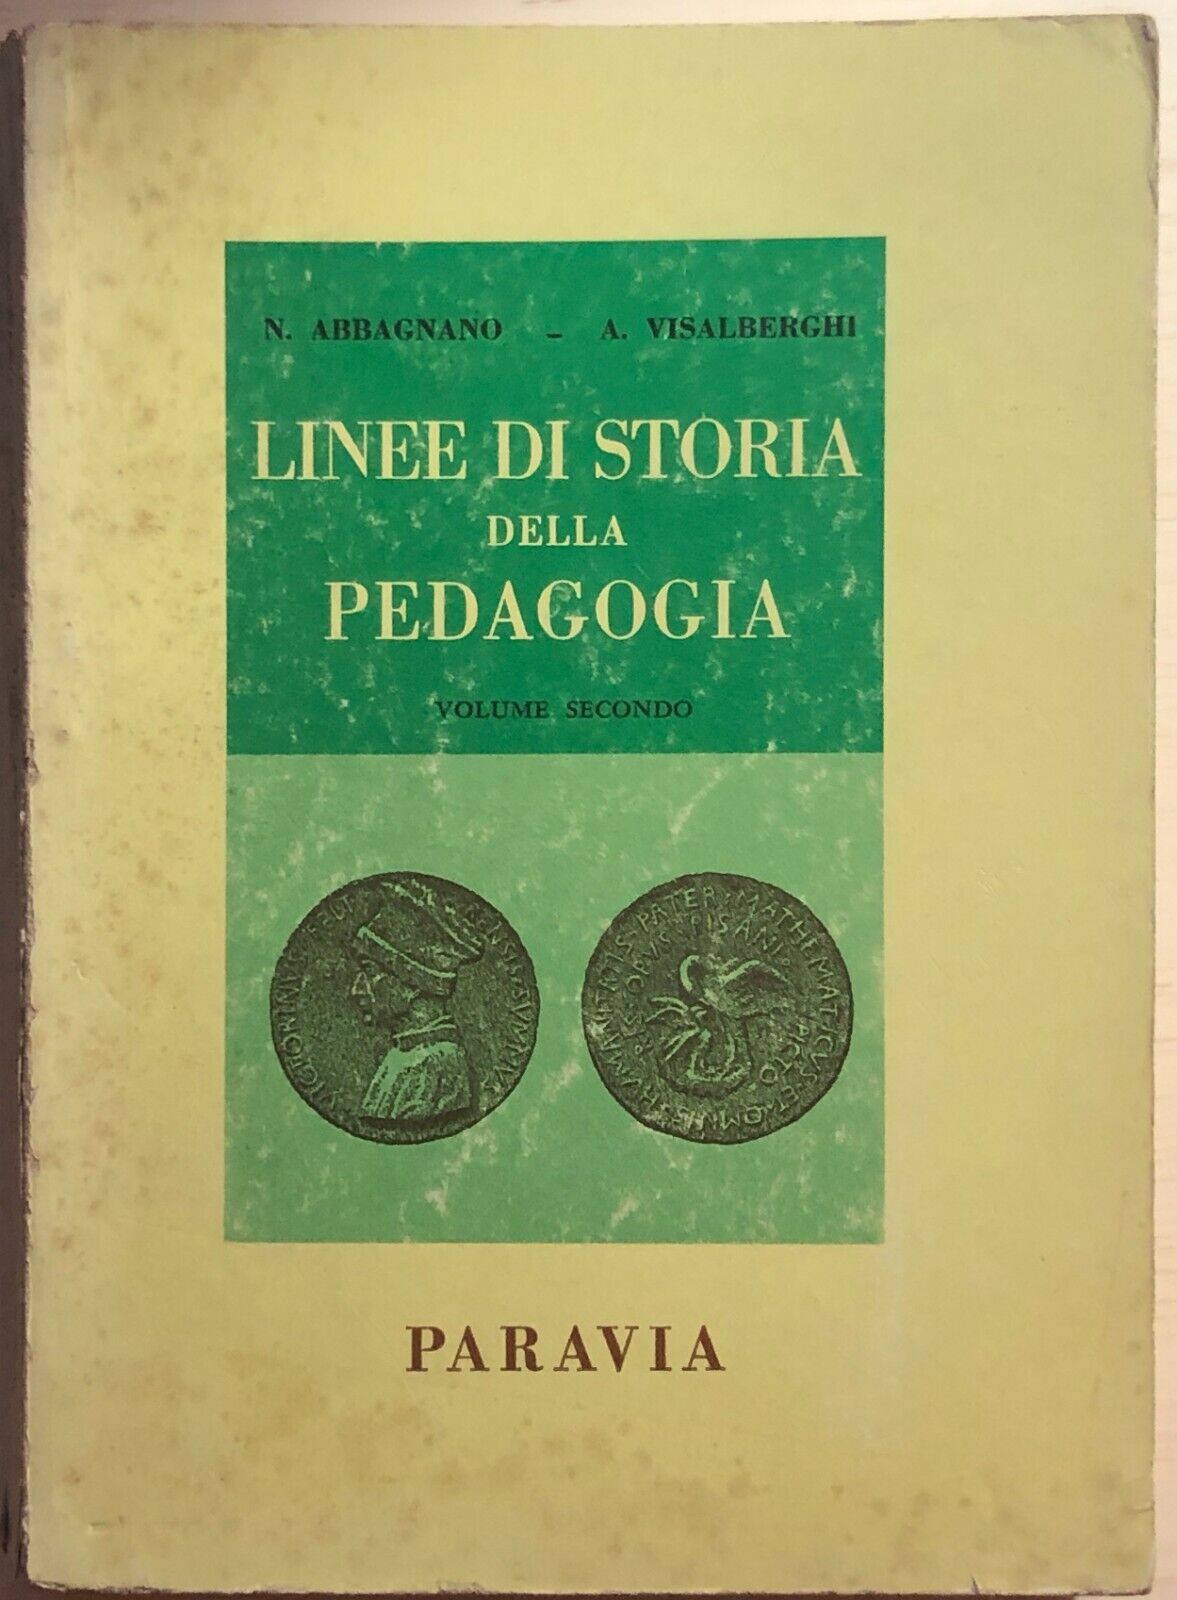 Linee di storia della pedagogia 2 di AA.VV., 1978, Paravia